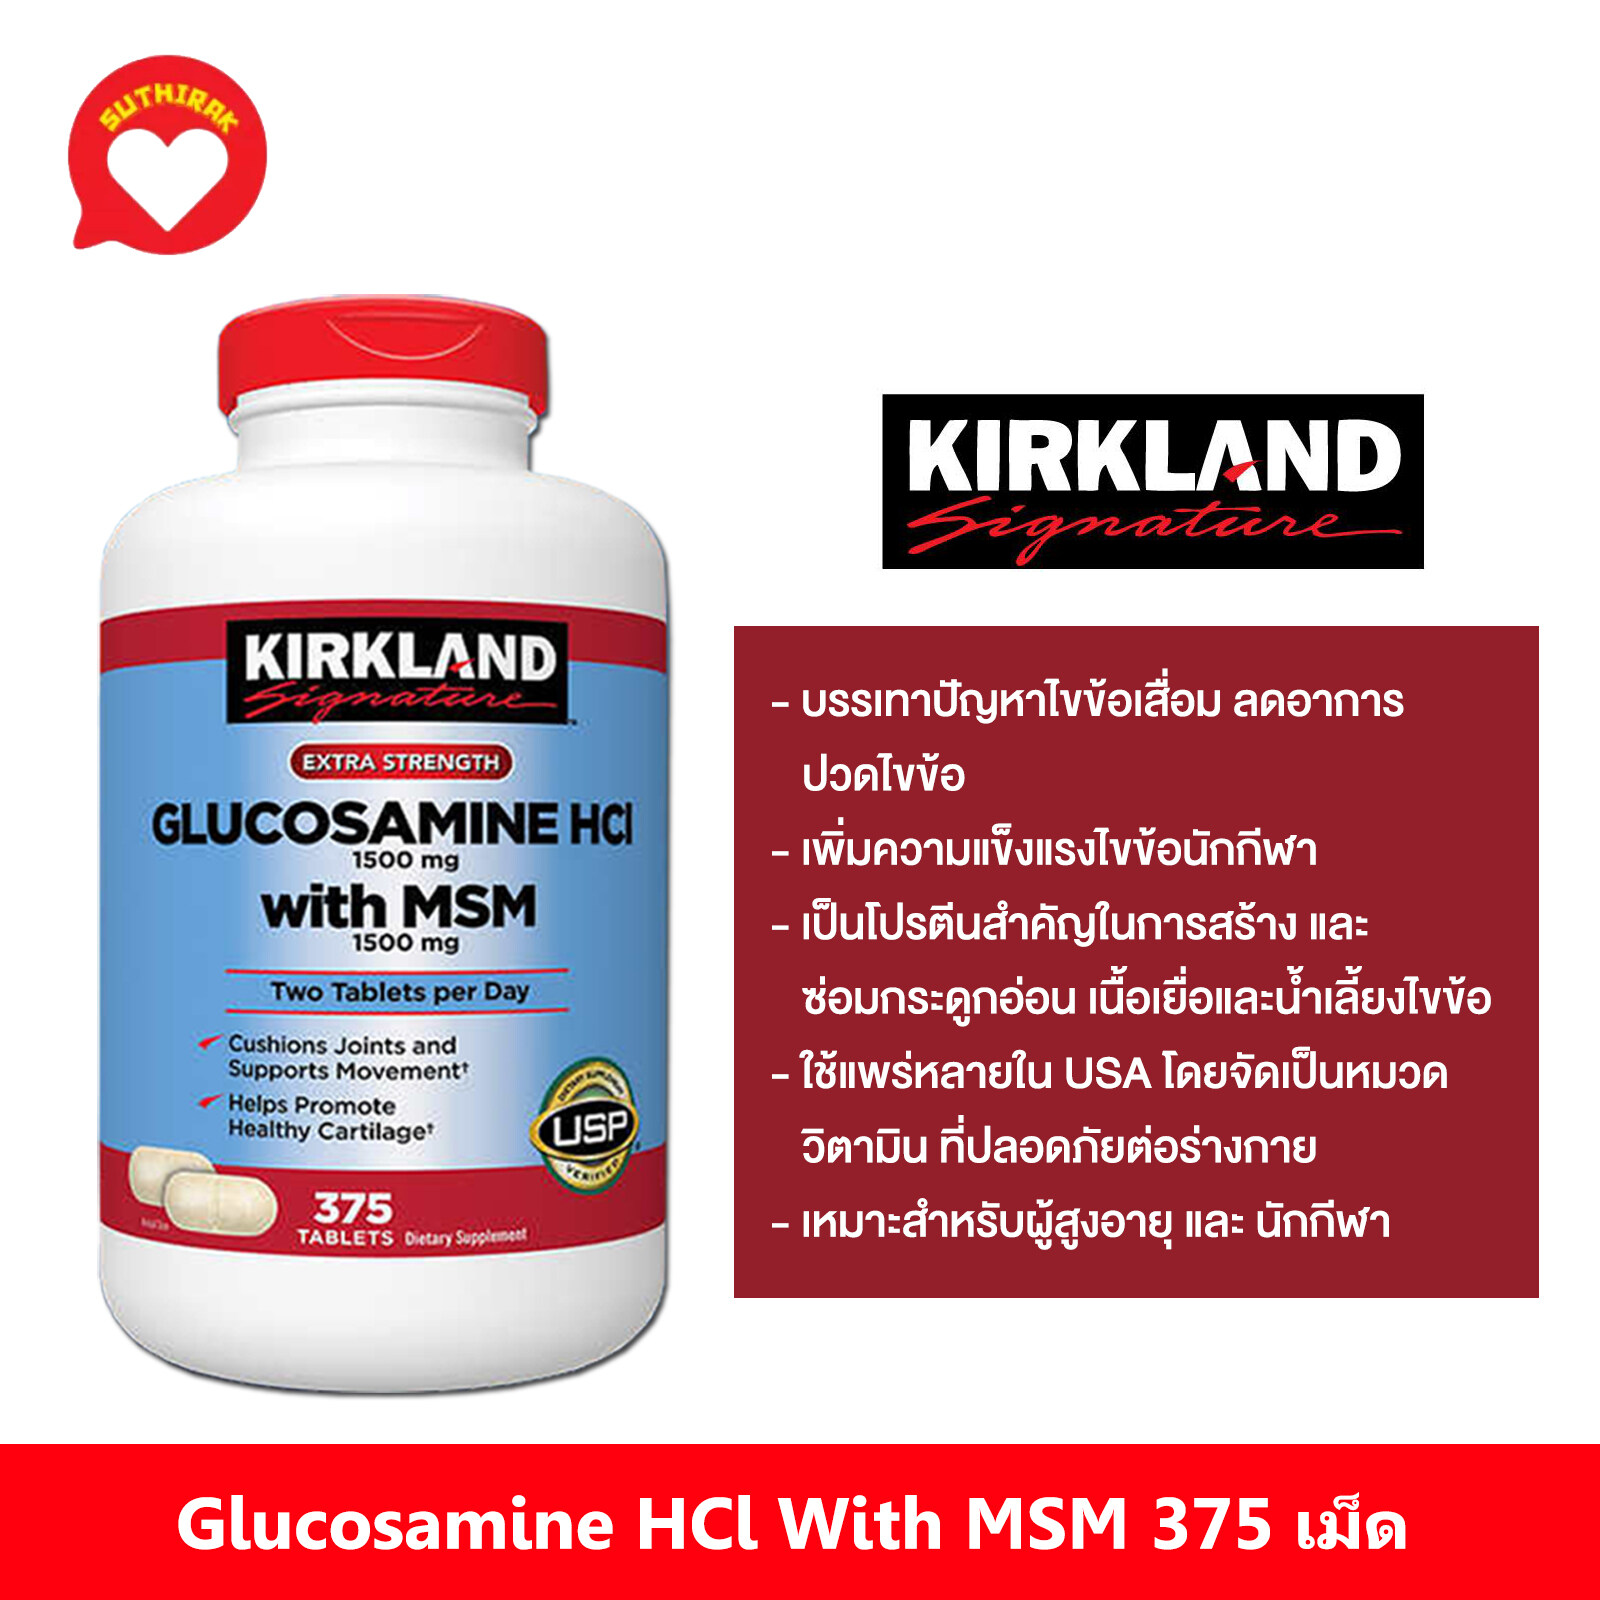 ขวดใหญ่กลูโคซามีน 375 เม็ดKirkland Signature Glucosamine with MSM, 375 Tablets